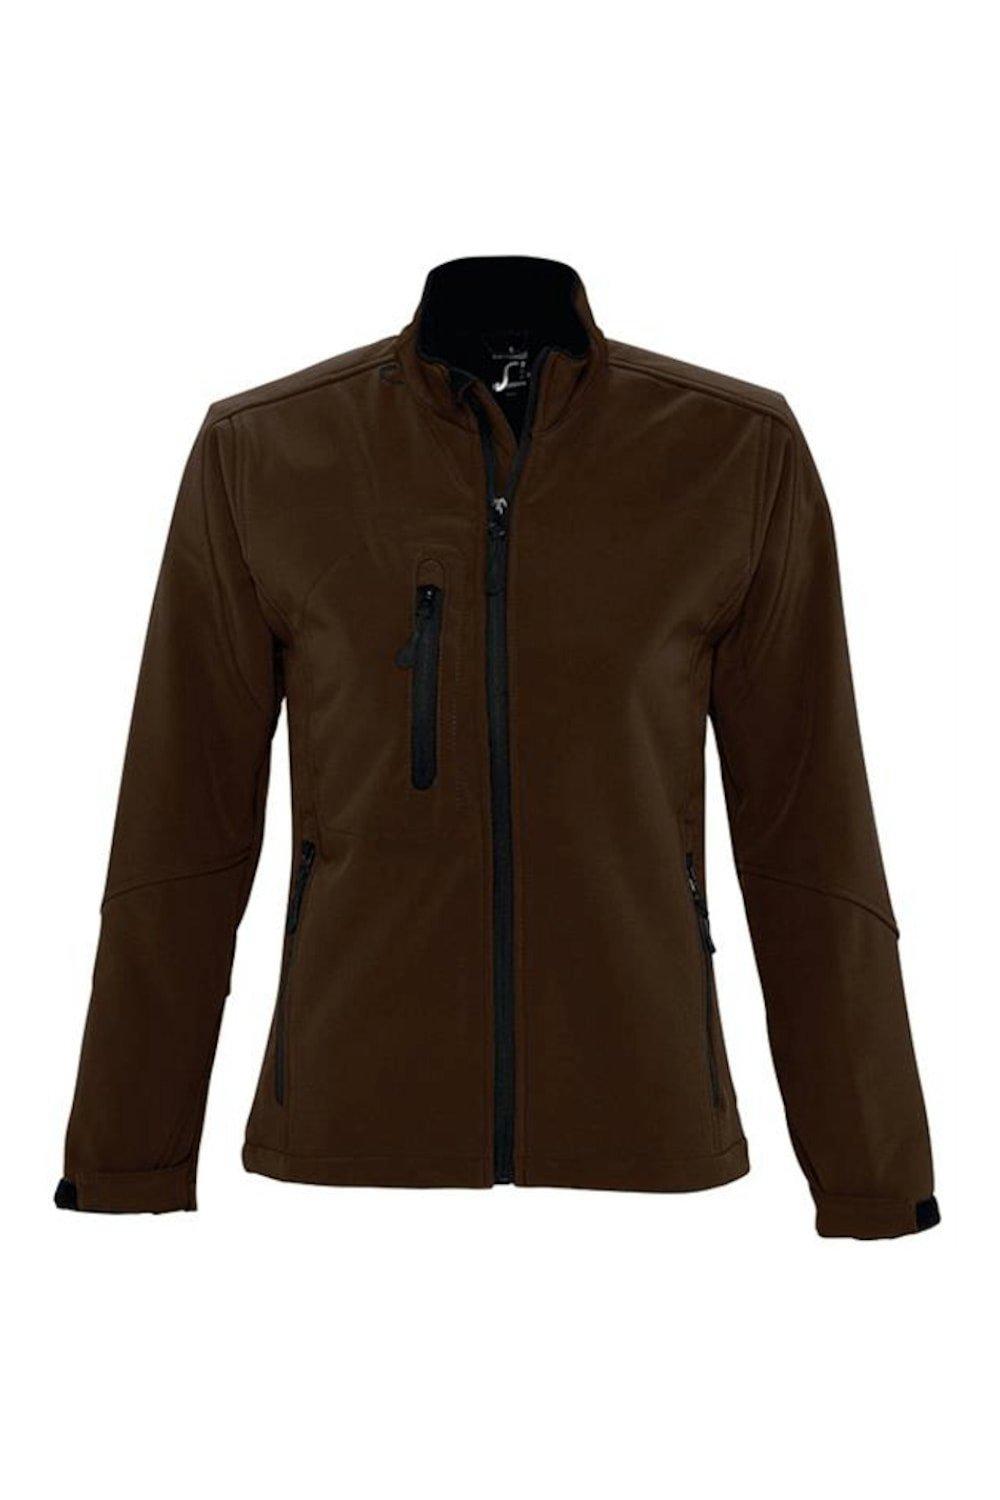 Куртка Roxy Soft Shell (дышащая, ветрозащитная и водостойкая) SOL'S, коричневый